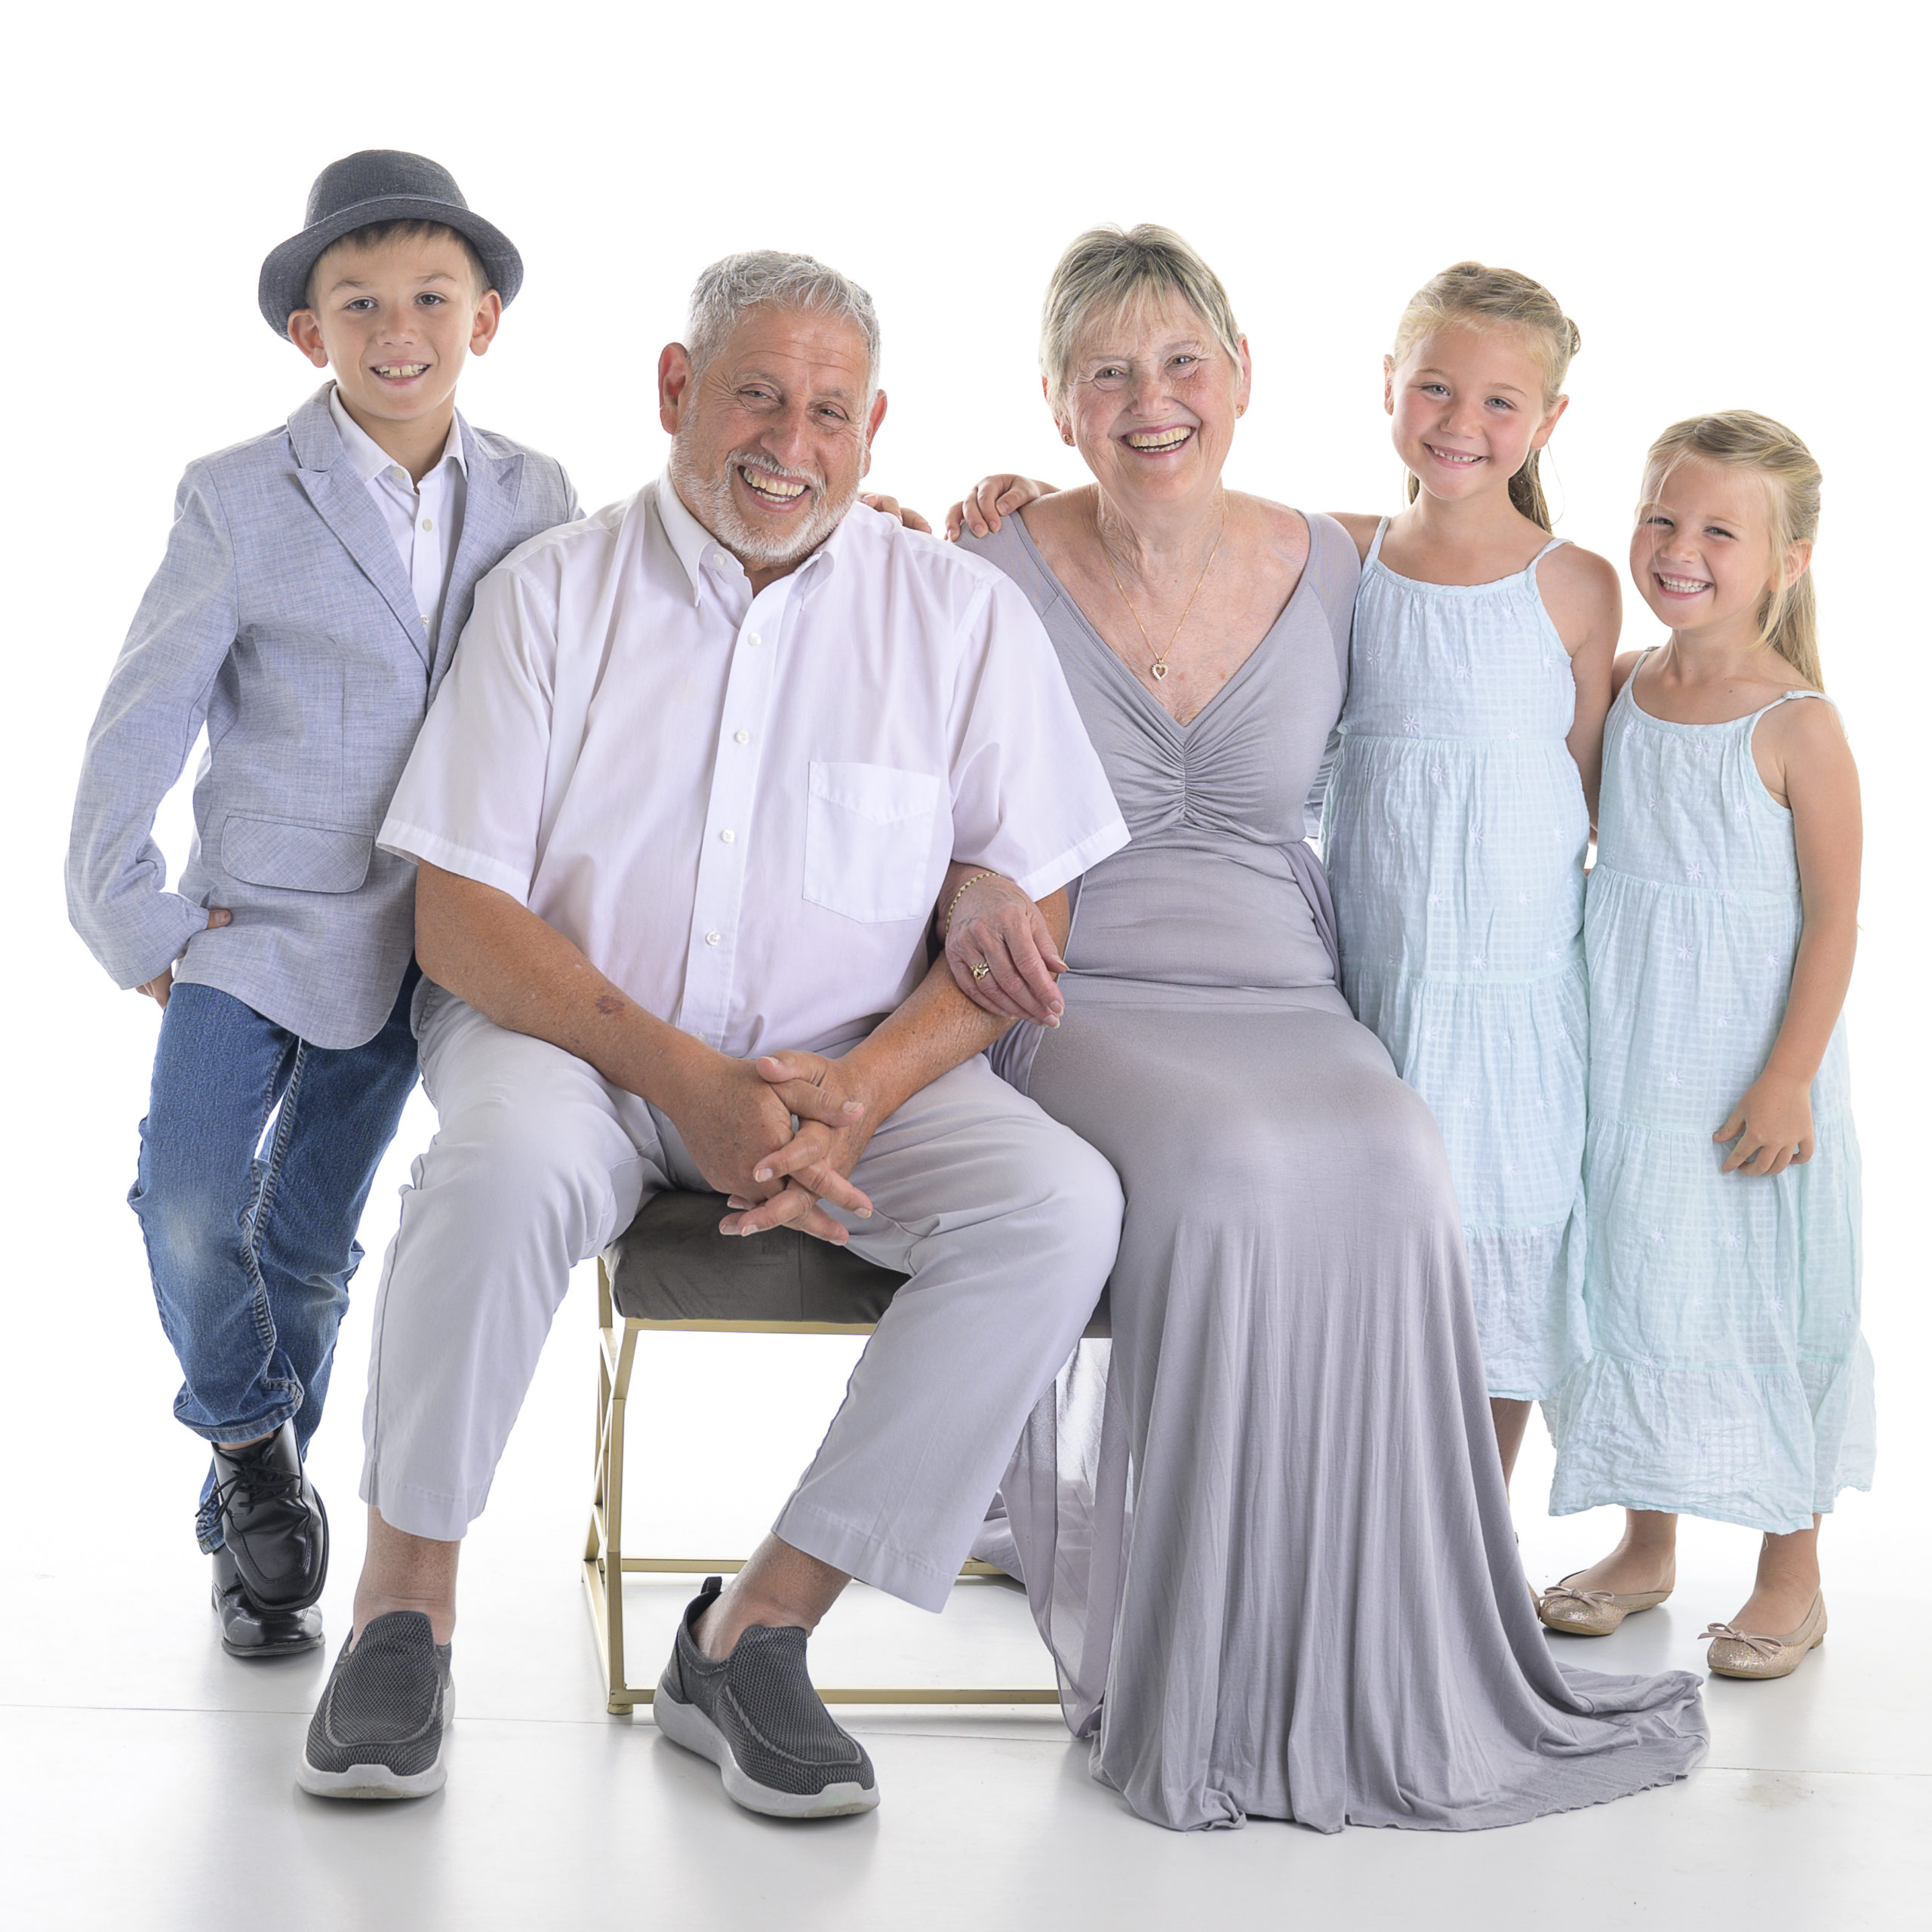 Grandchildren and Grandparent portrait on white in a photography studio